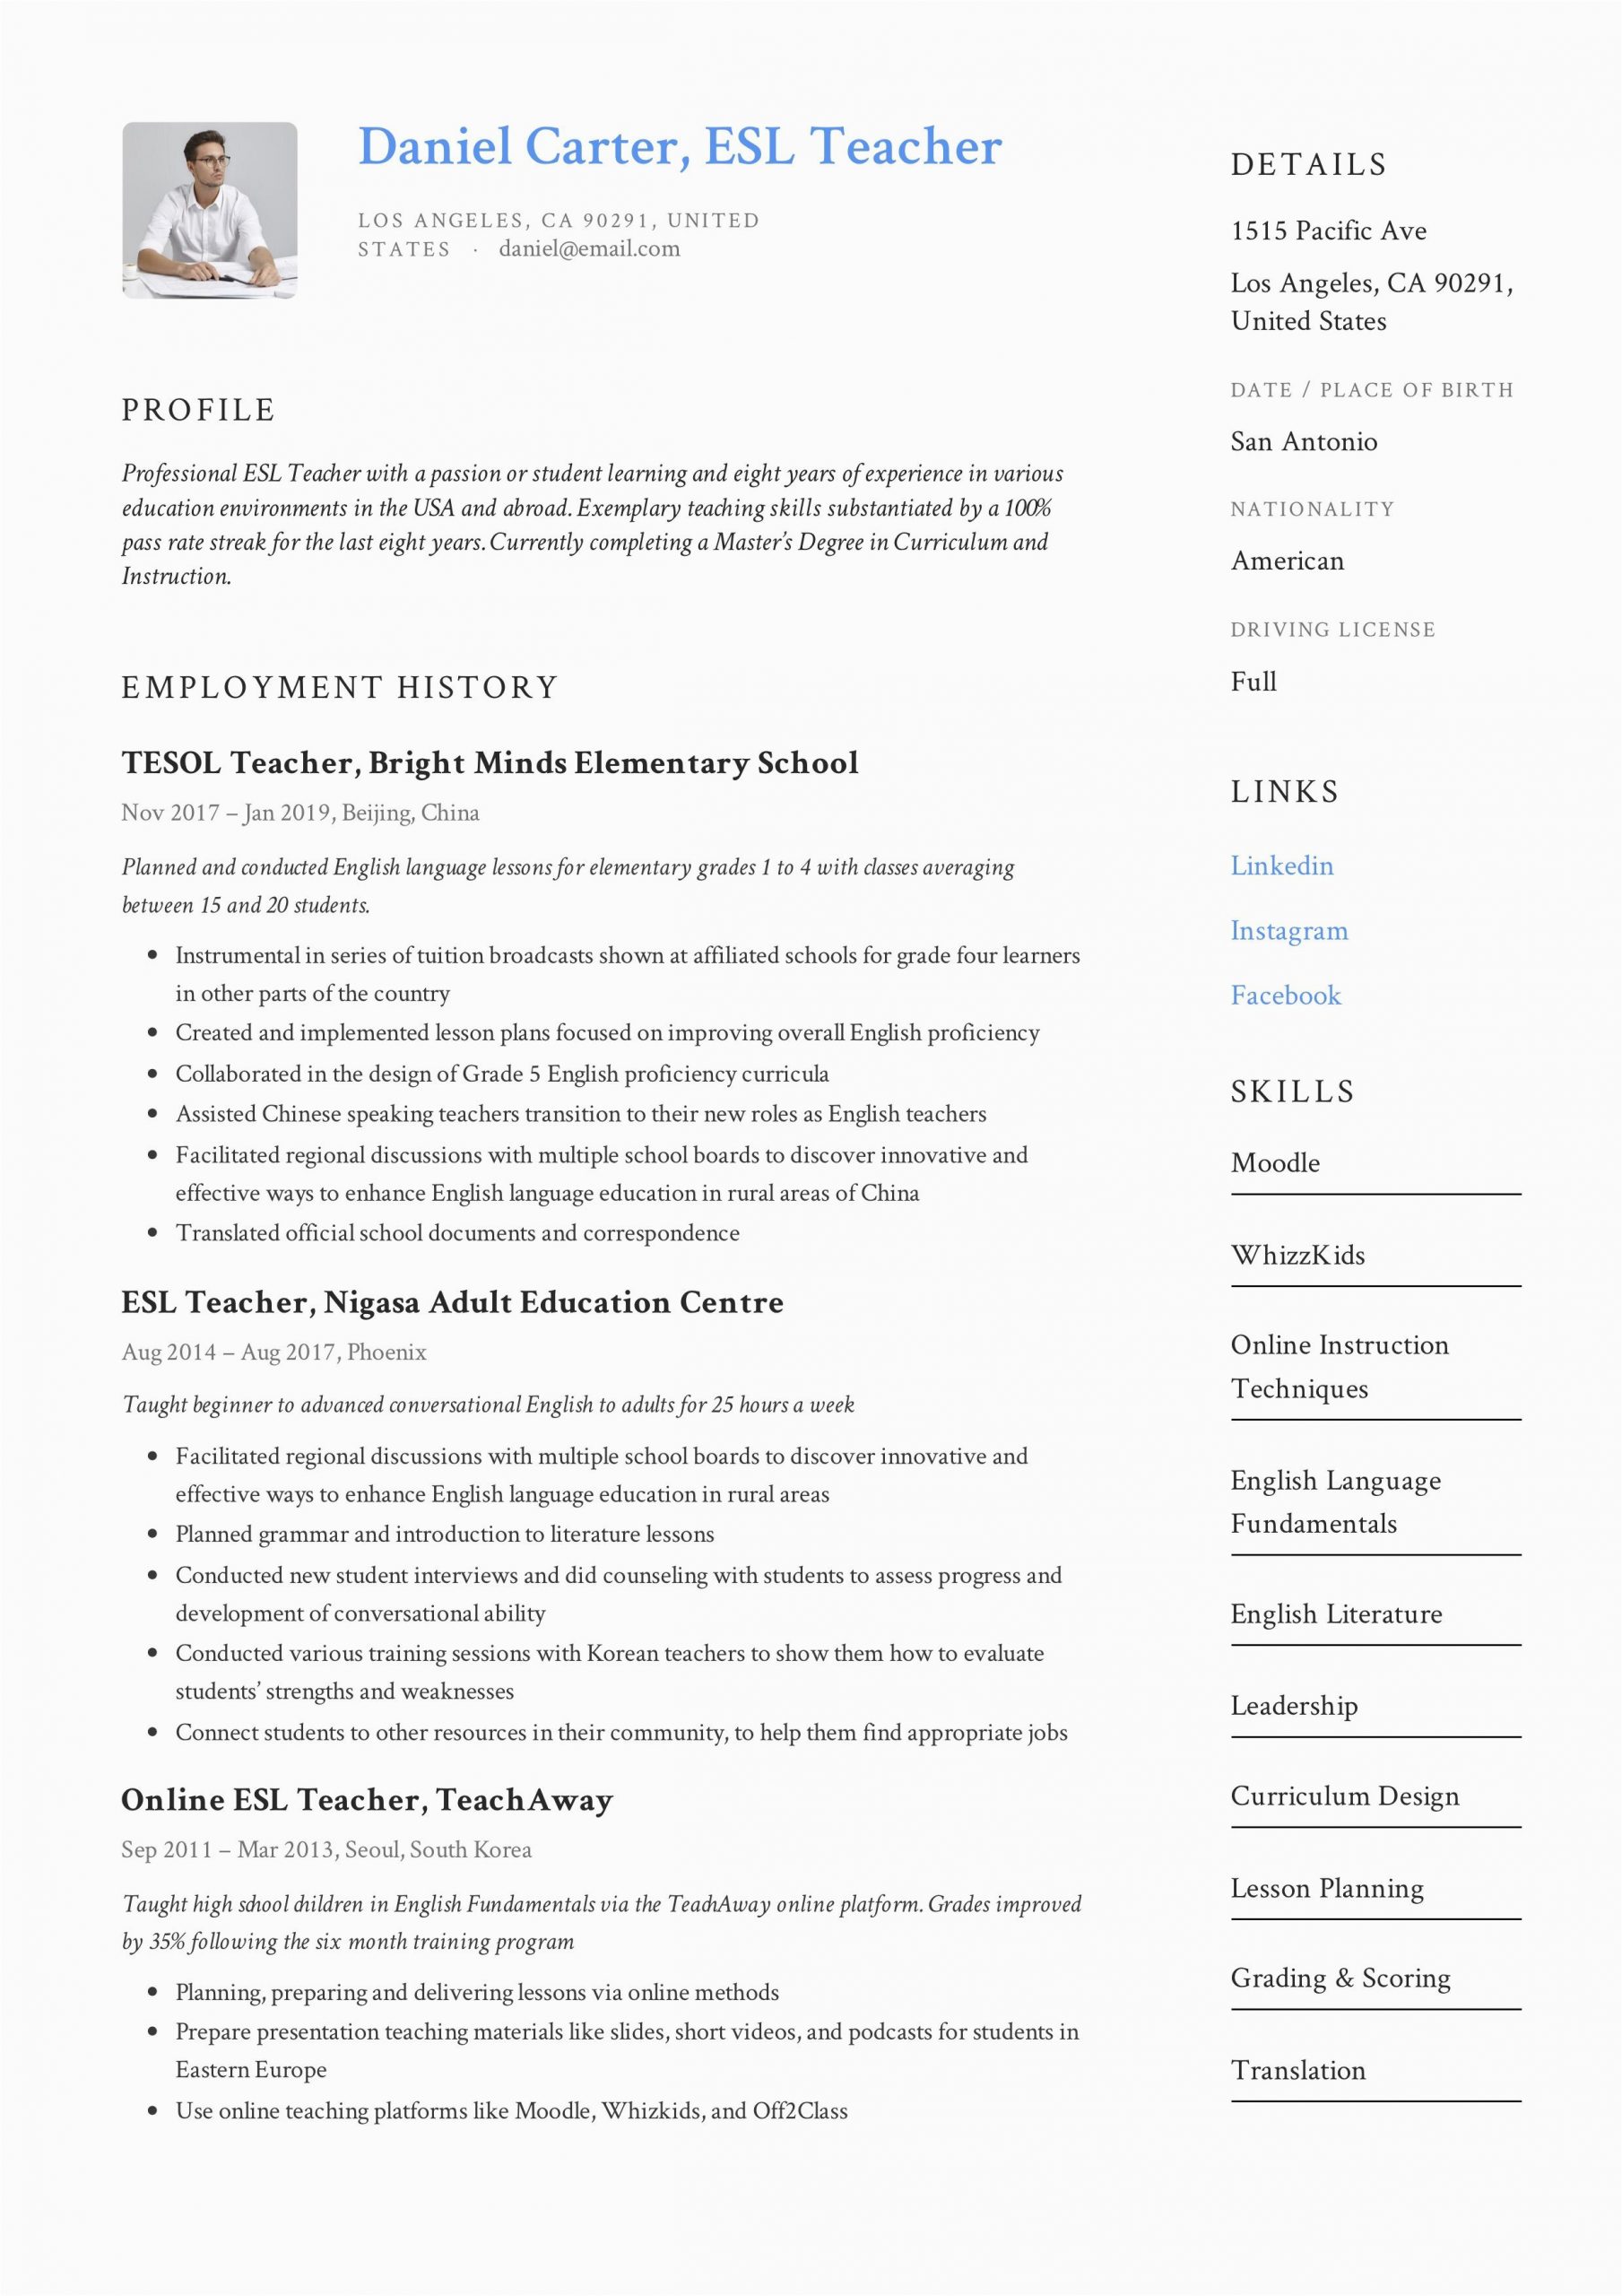 Sample Resume for Online Esl Teacher Esl Teacher Resume Example